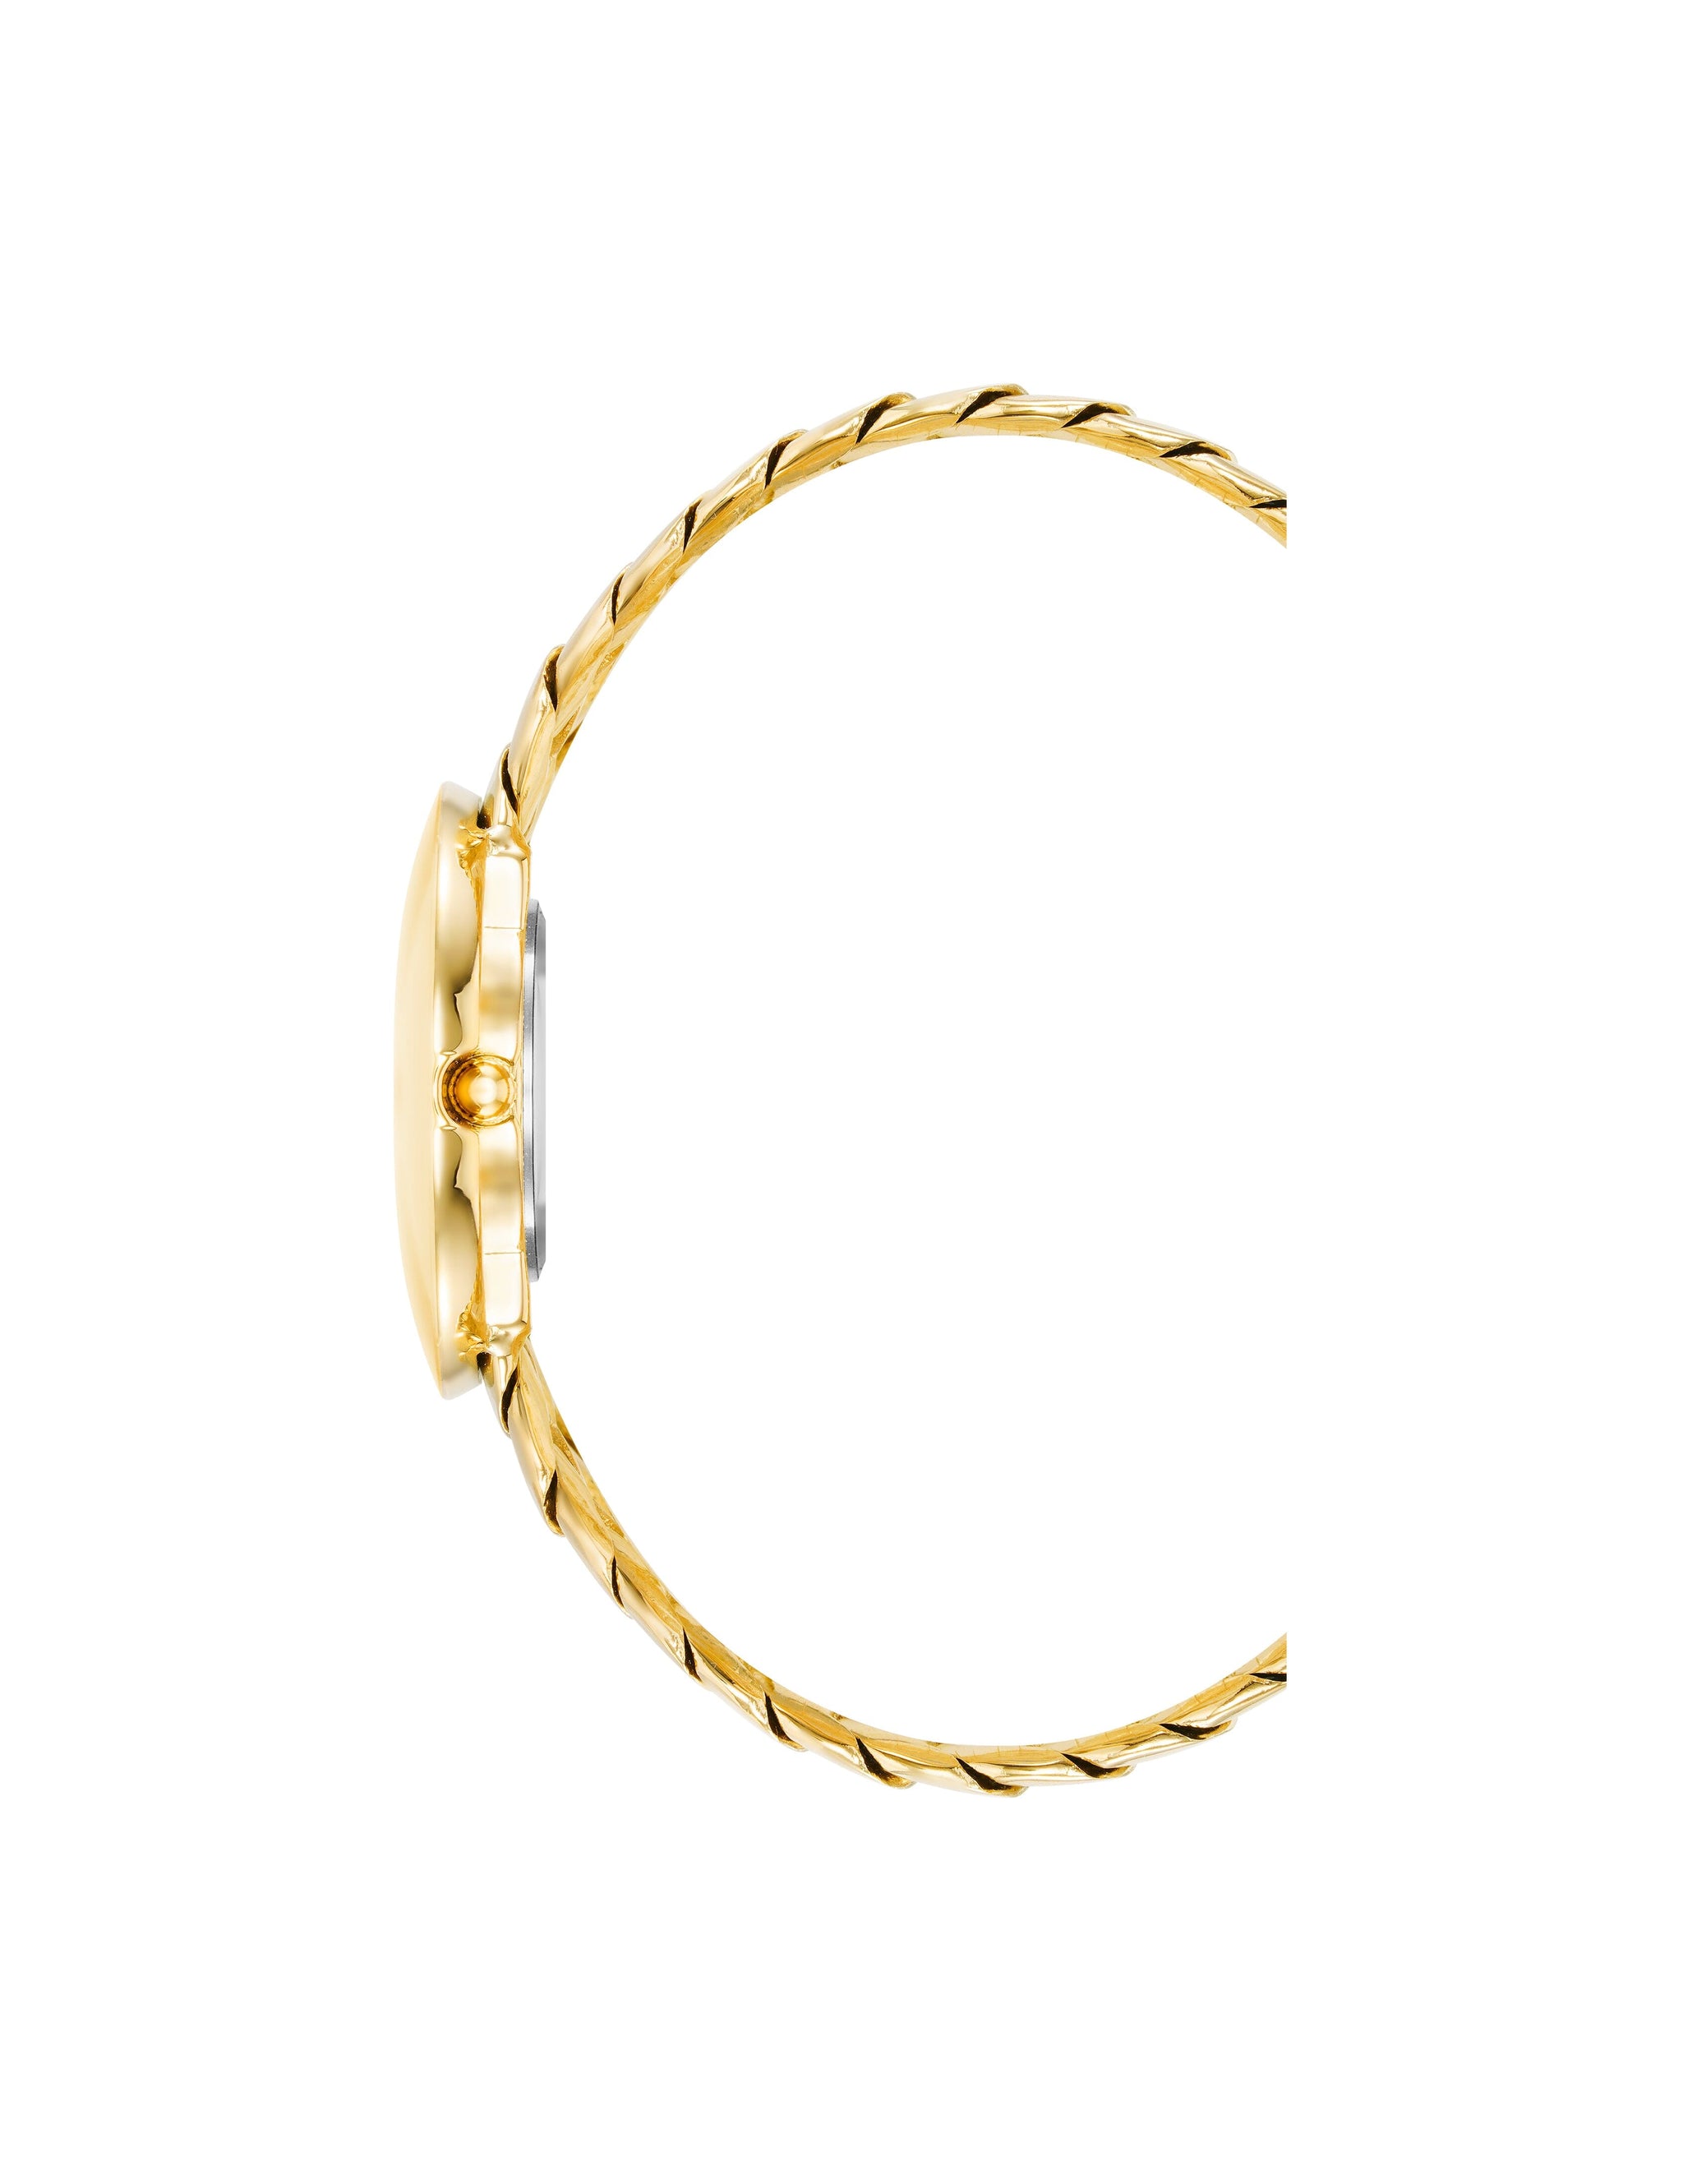 Louis Vuitton Bracelet Review - Wear & tear/Excellent Gifts! 